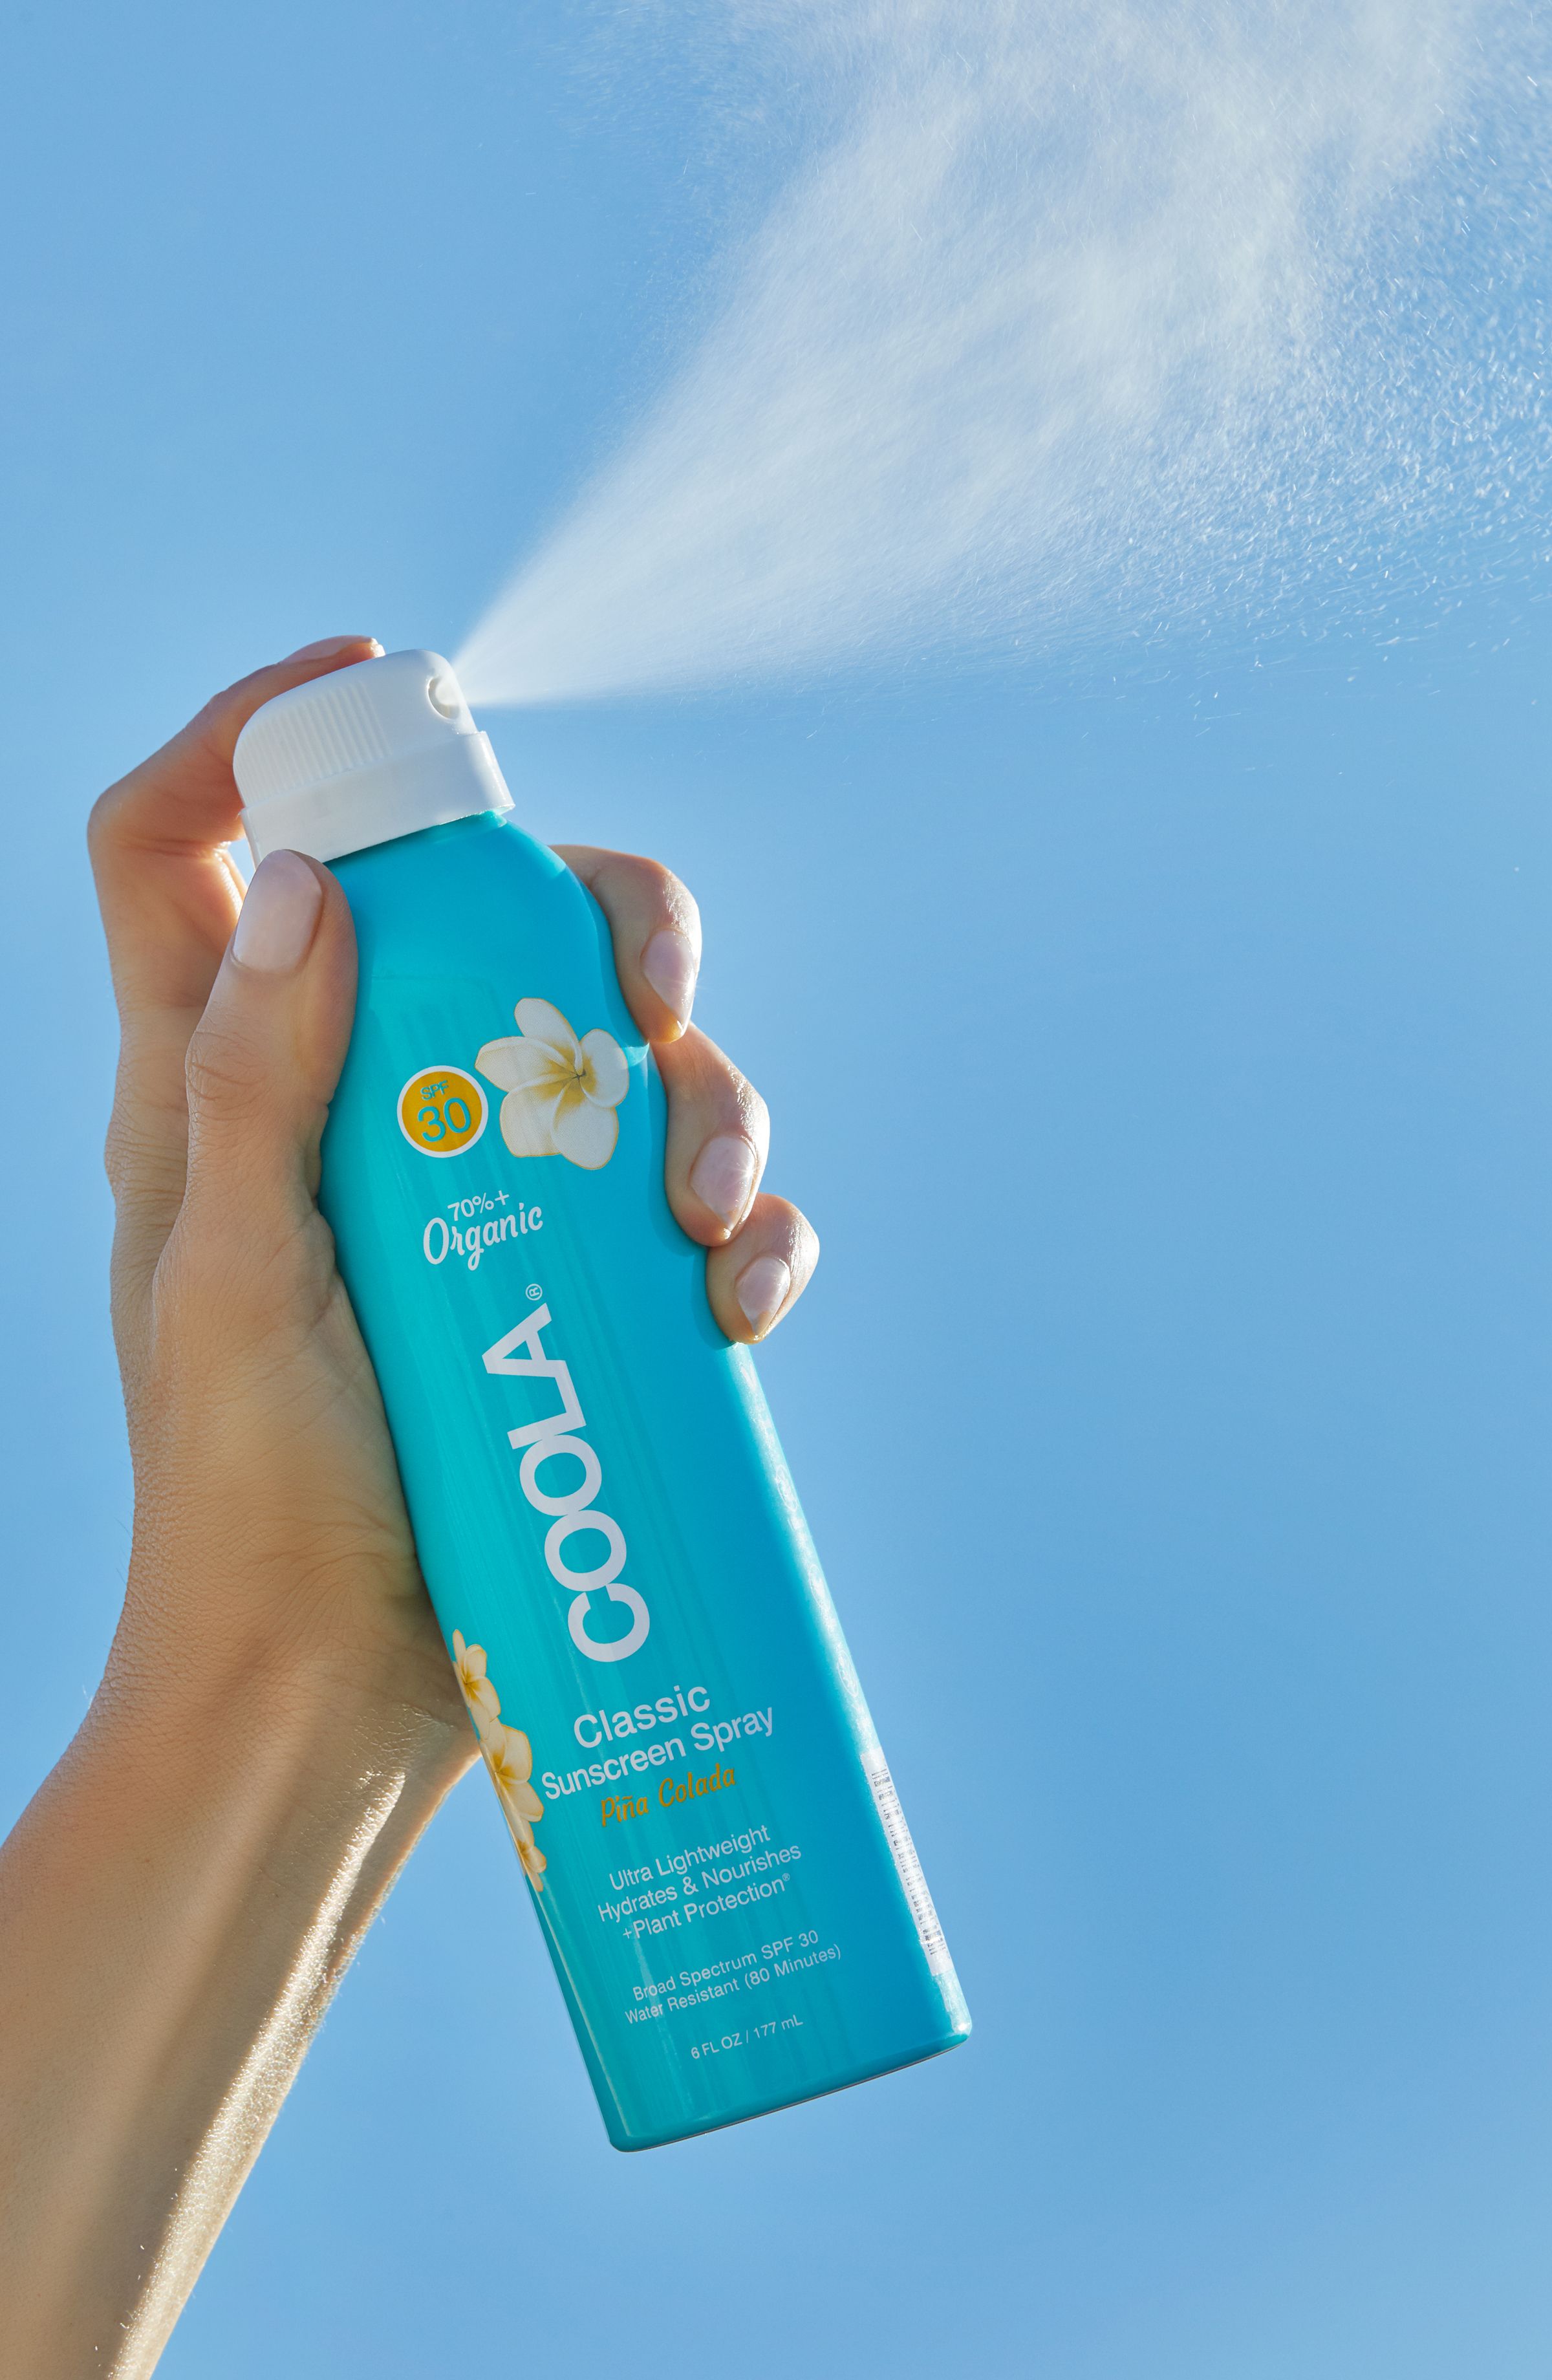 COOLA Classic Body Organic Sunscreen Spray, Piña Colada, SPF 30 - 6 fl oz